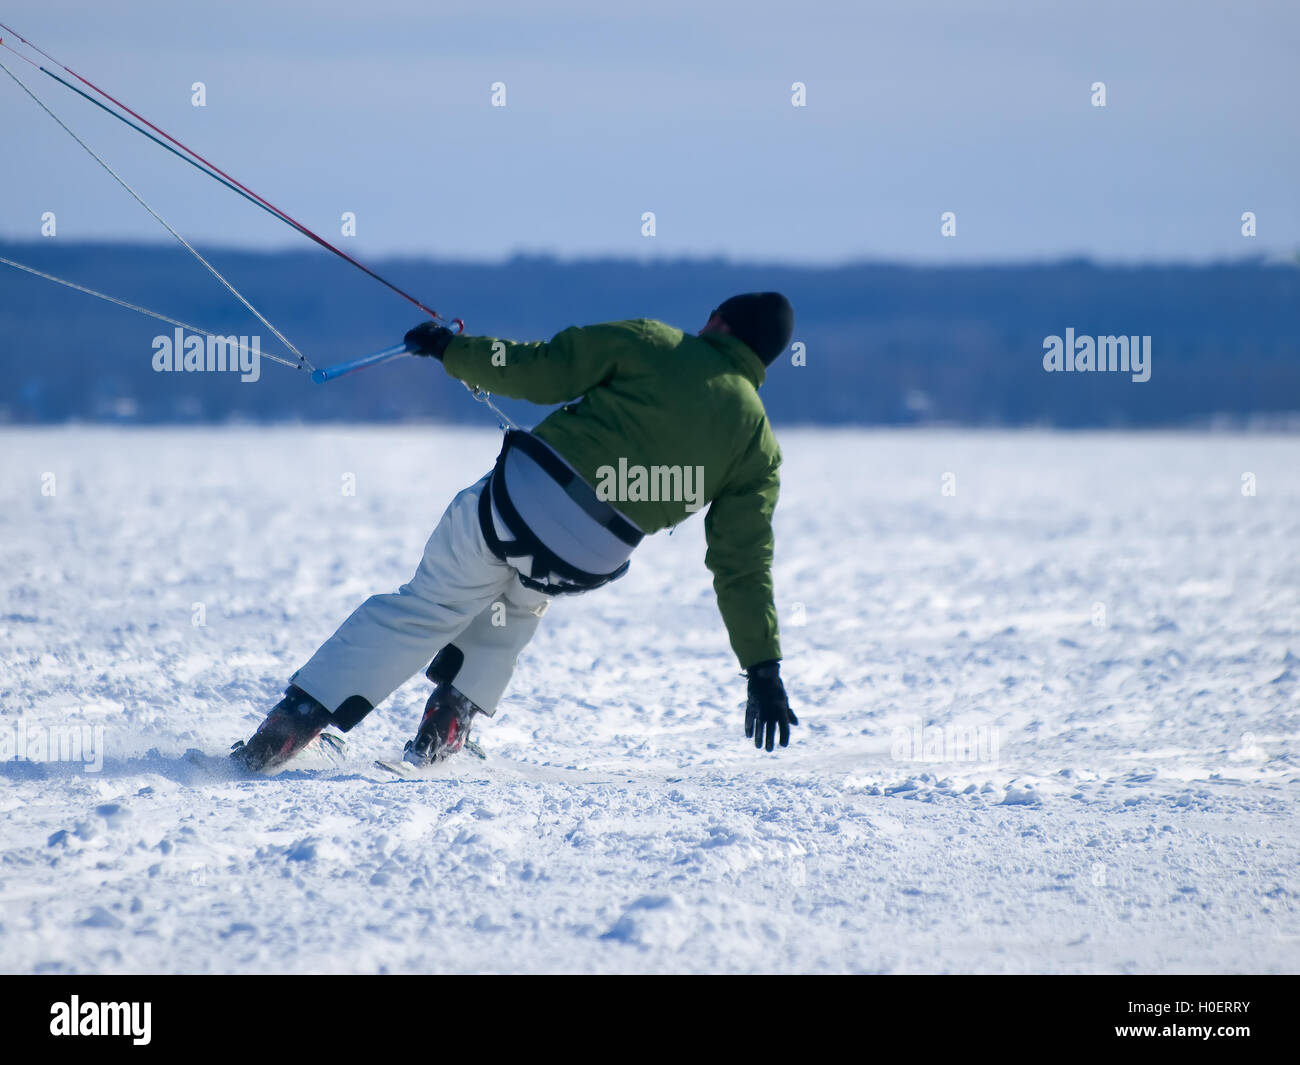 Men ski kiting on a frozen lake Stock Photo